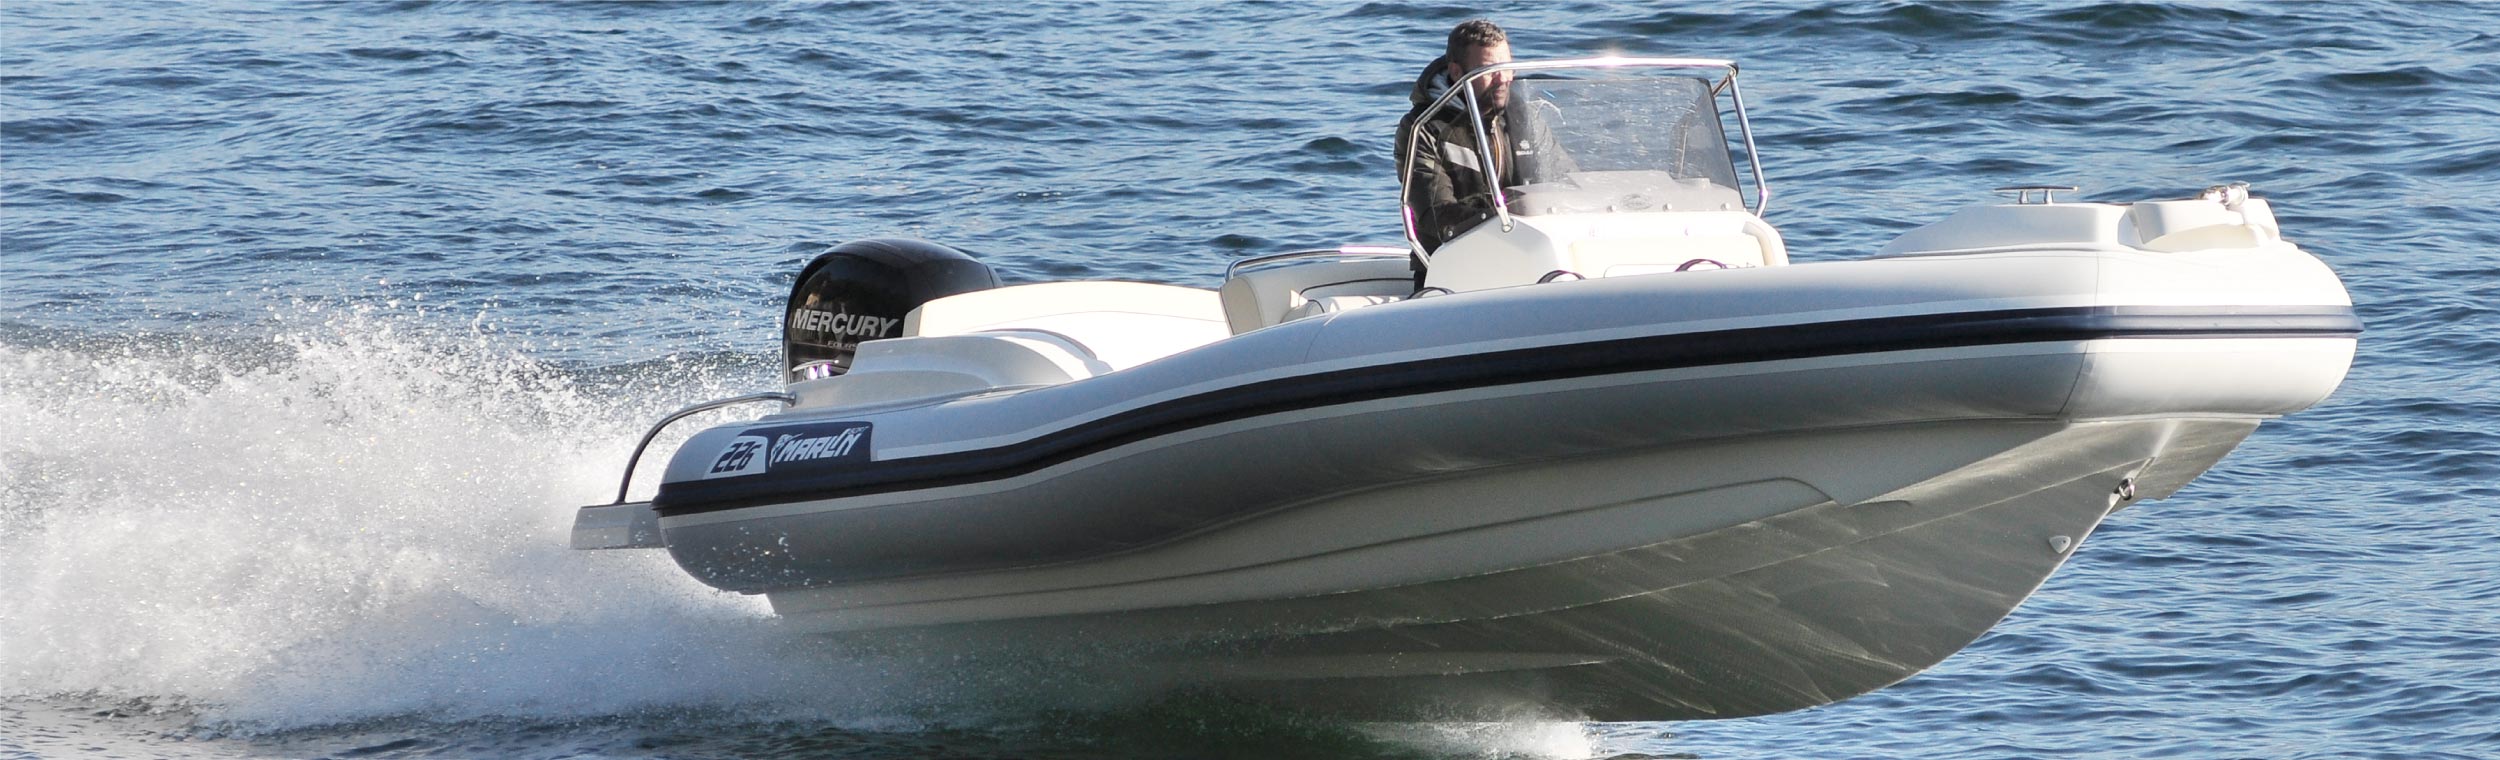 Marlin Boat - Outboard model  226